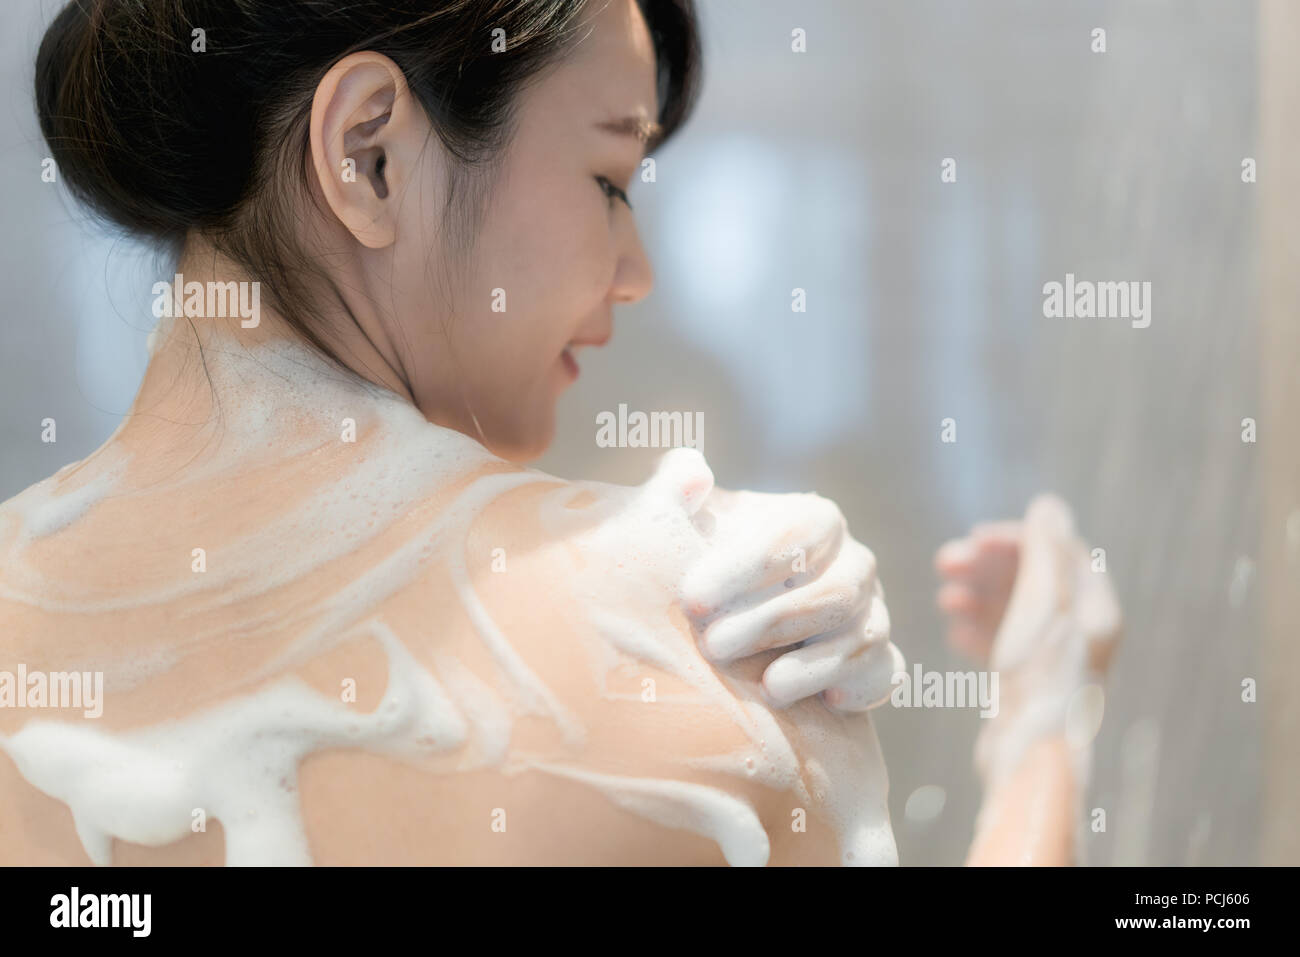 Junge asiatische Frau unter der Dusche im Badezimmer mit Dusche. Suchen glücklich und entspannen. Stockfoto